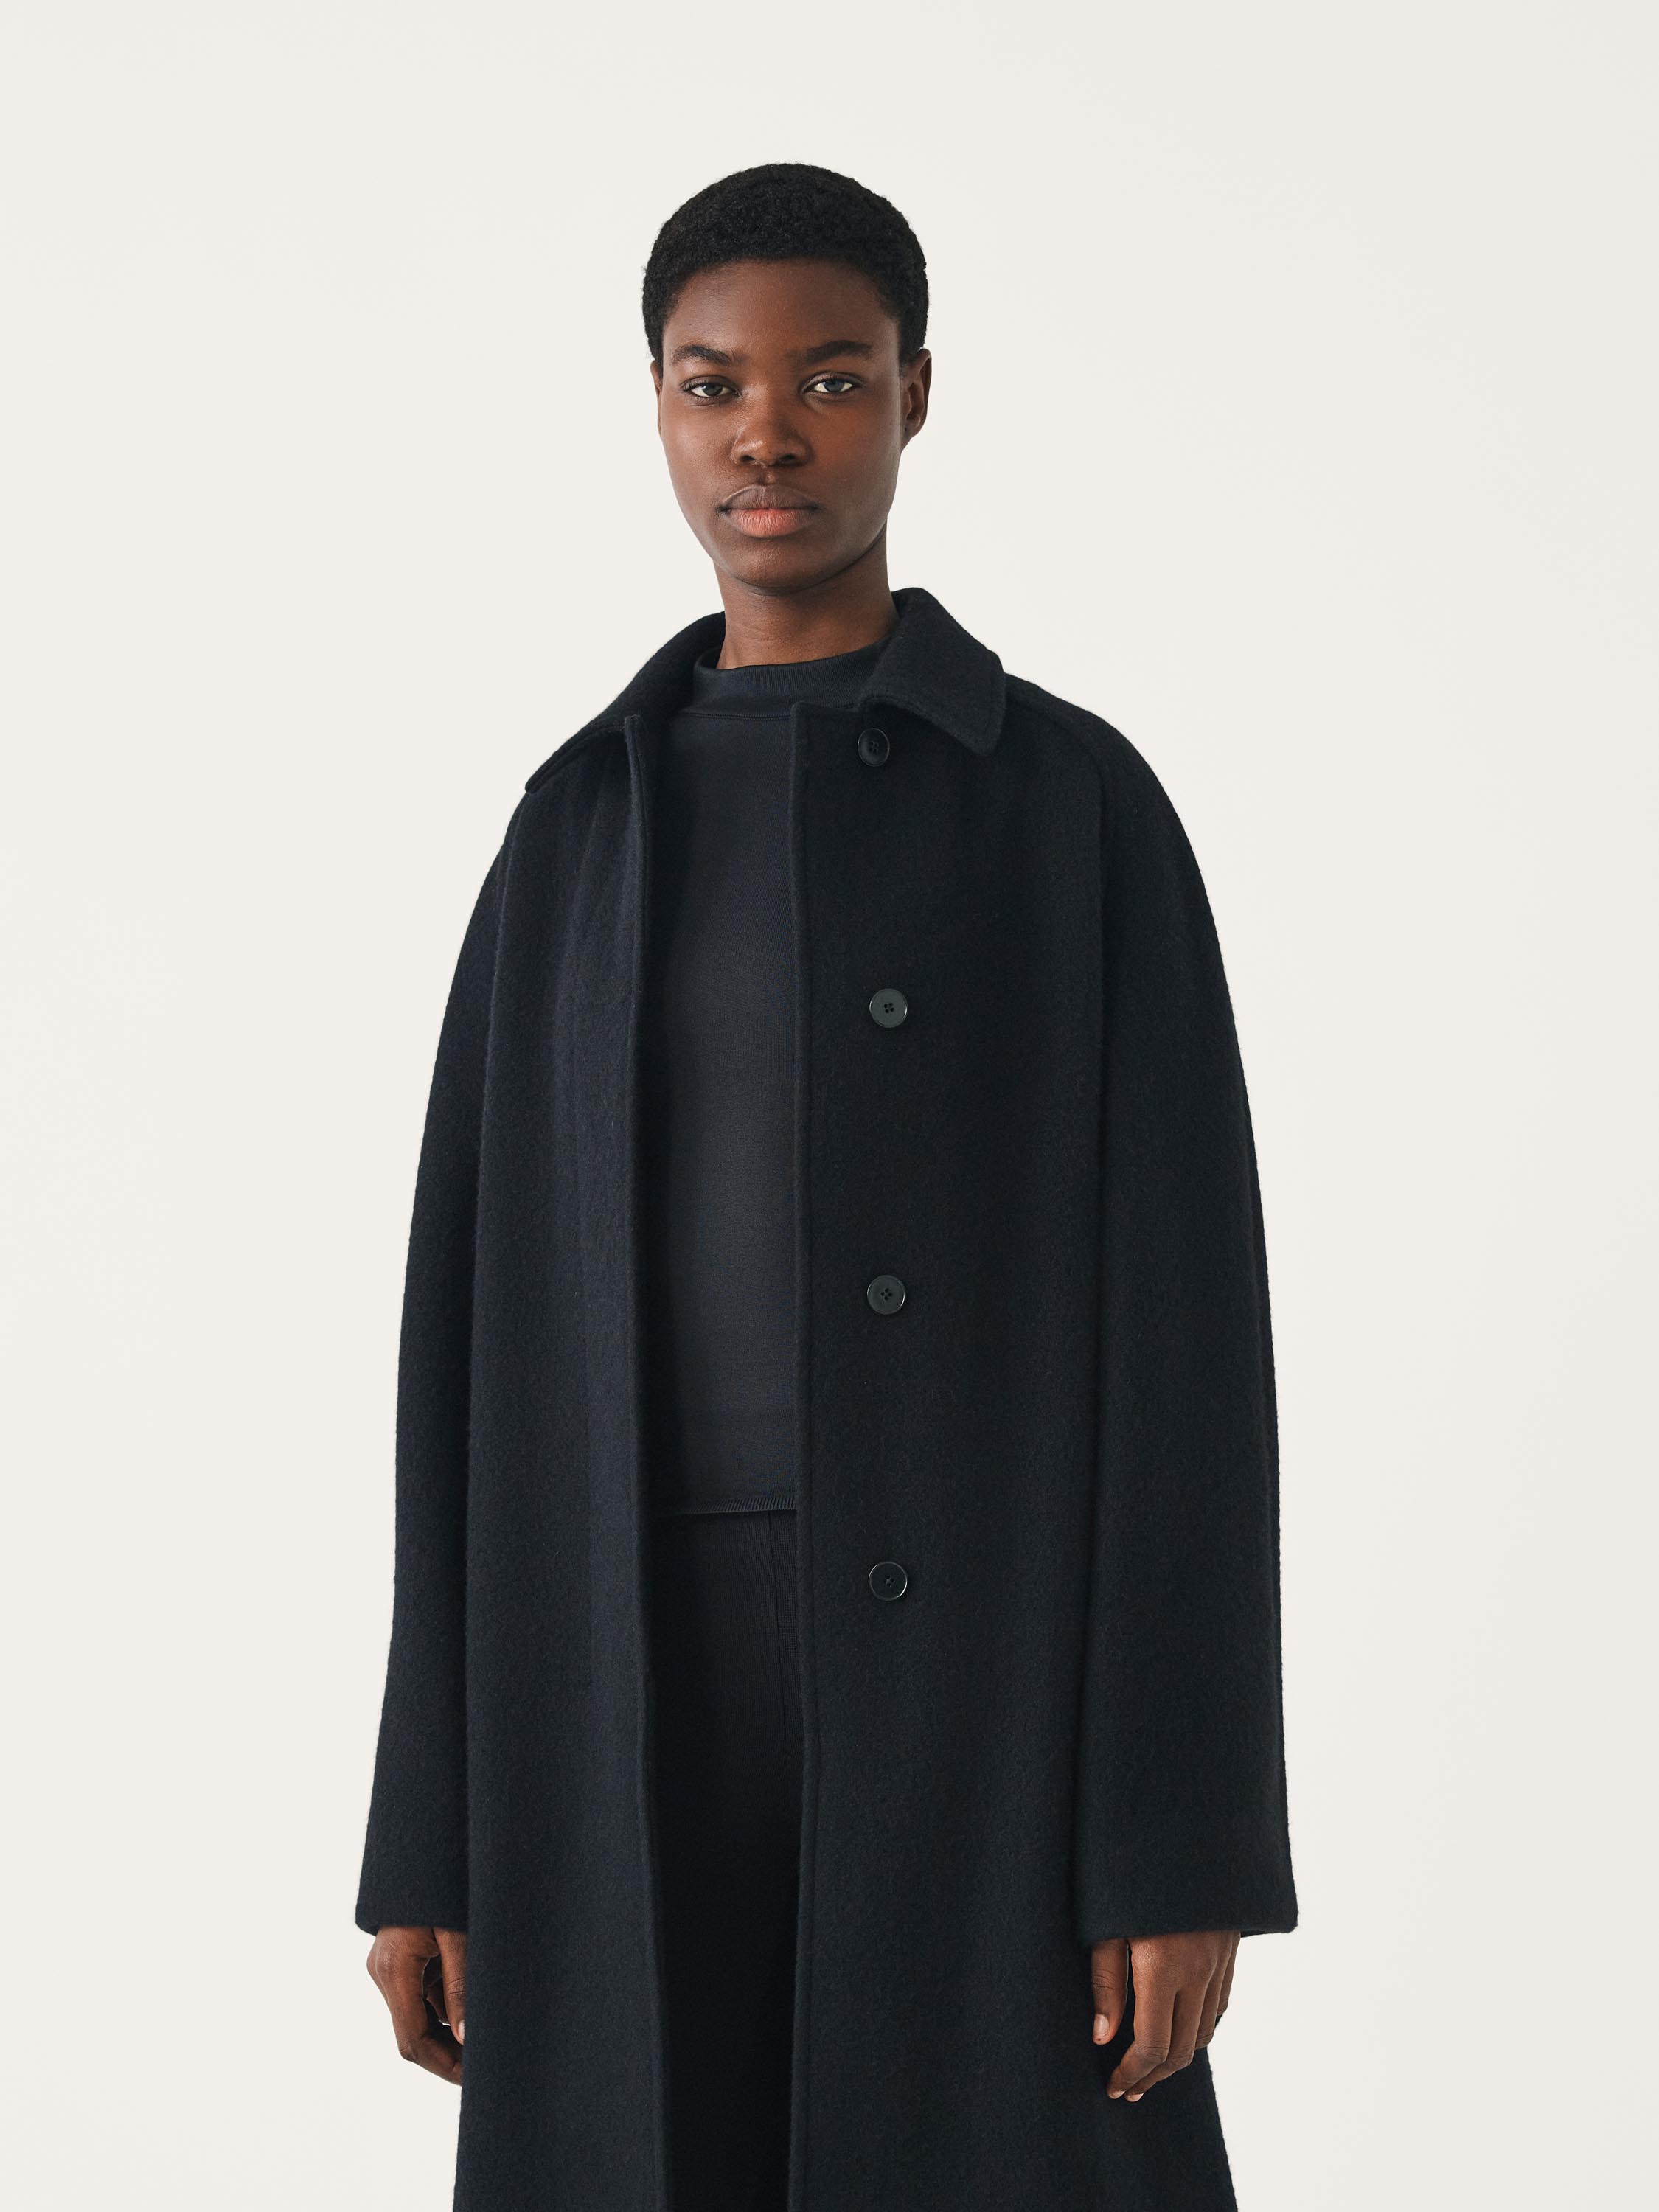 JARA oversized wool coat with raglan sleeves | FFORME